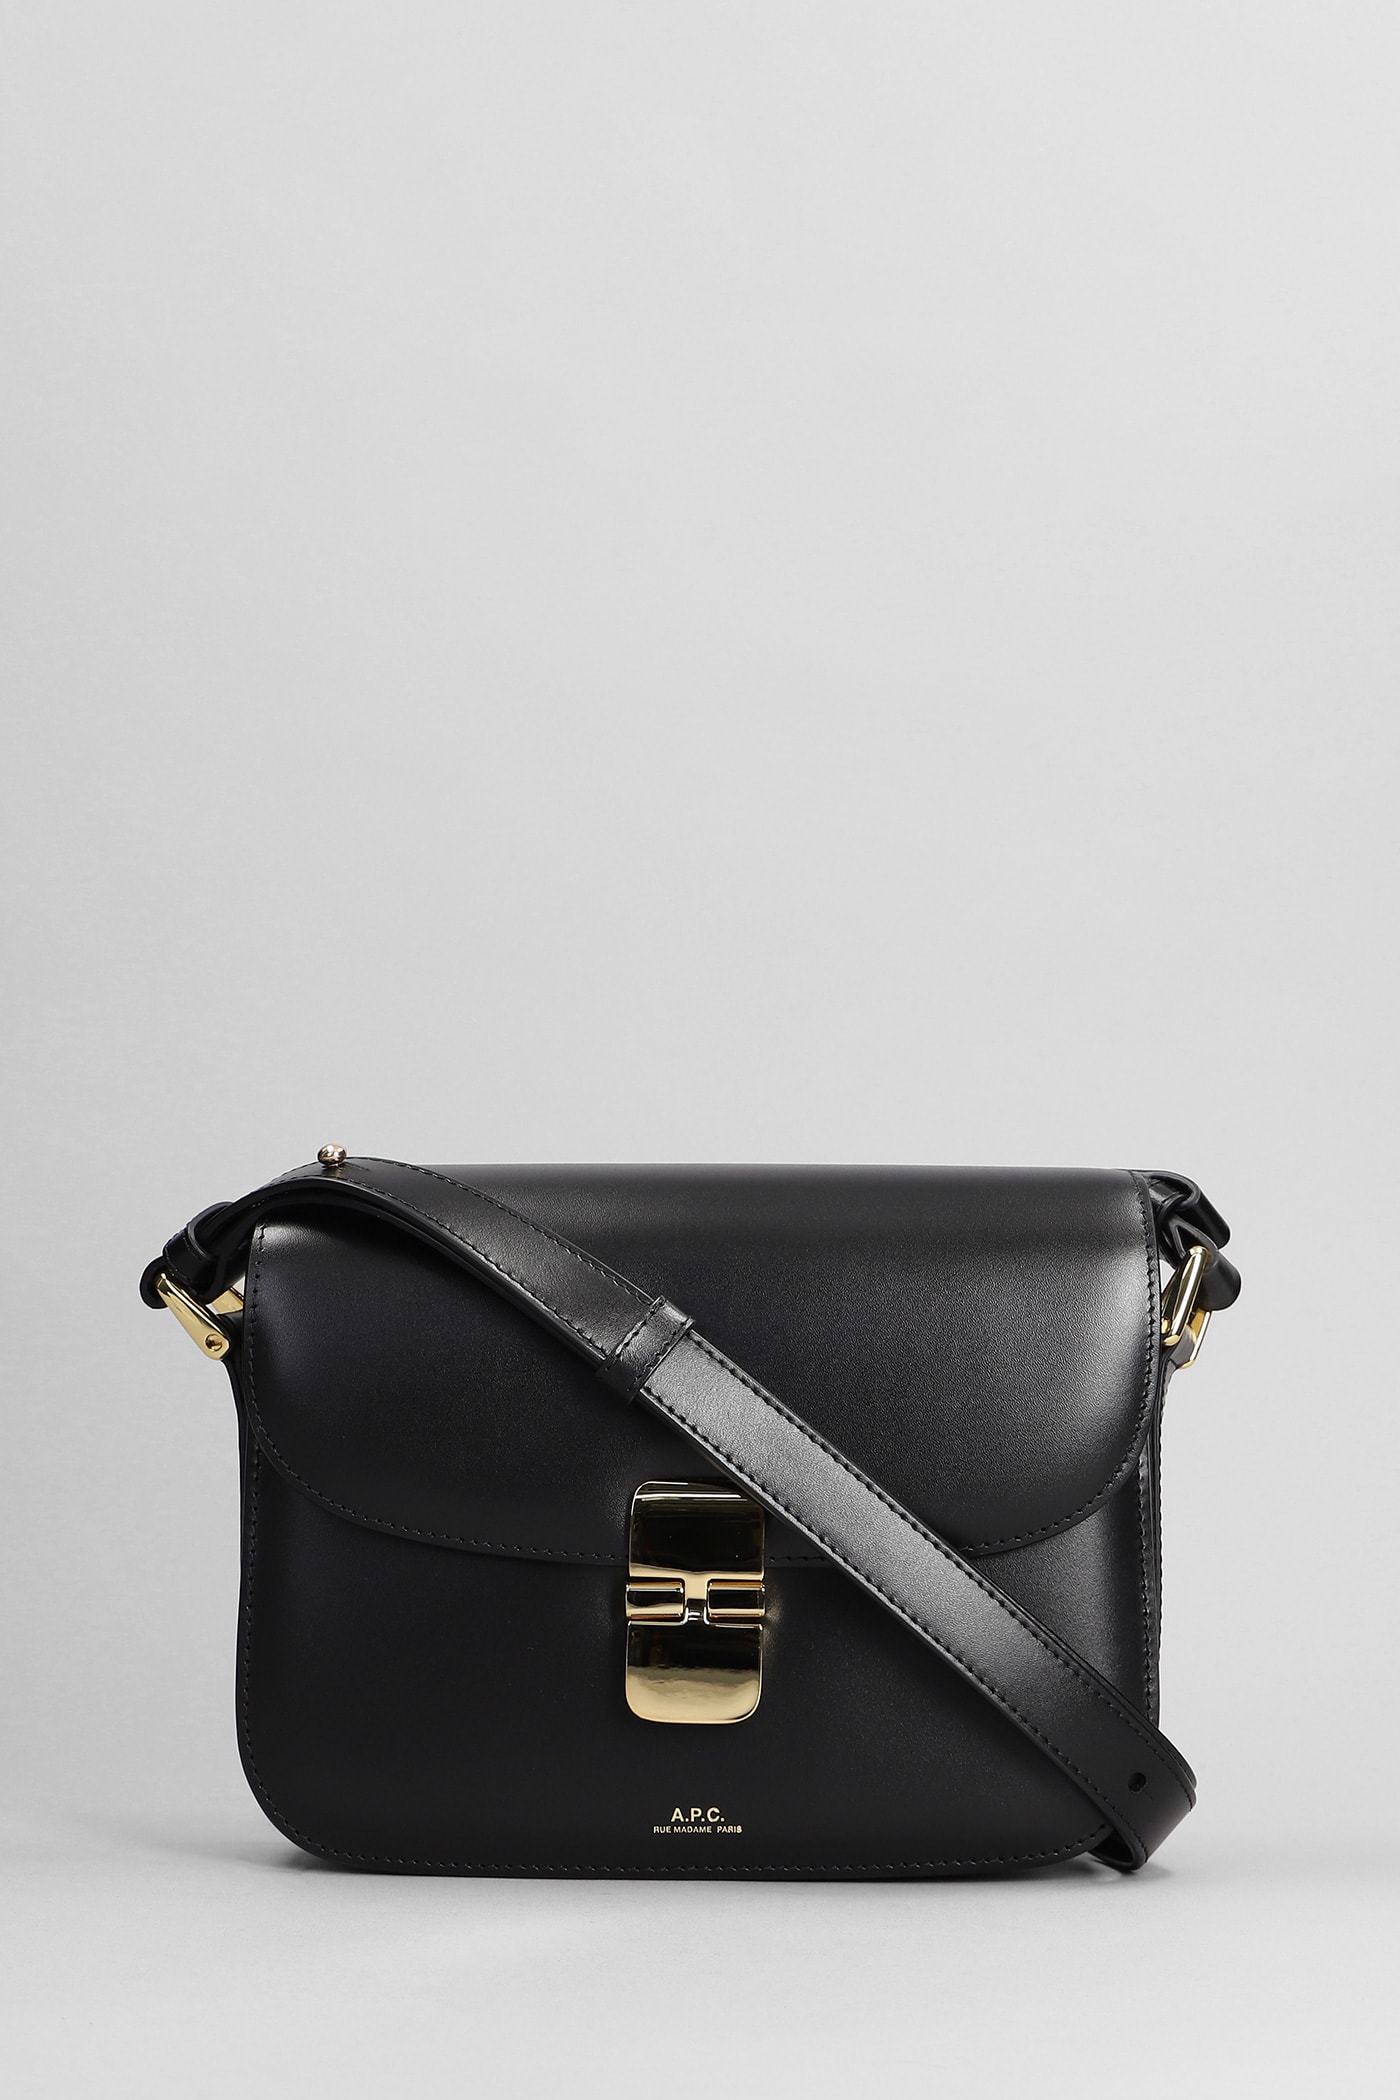 Grace Mini Hobo Bag - A.P.C. - Black - Leather